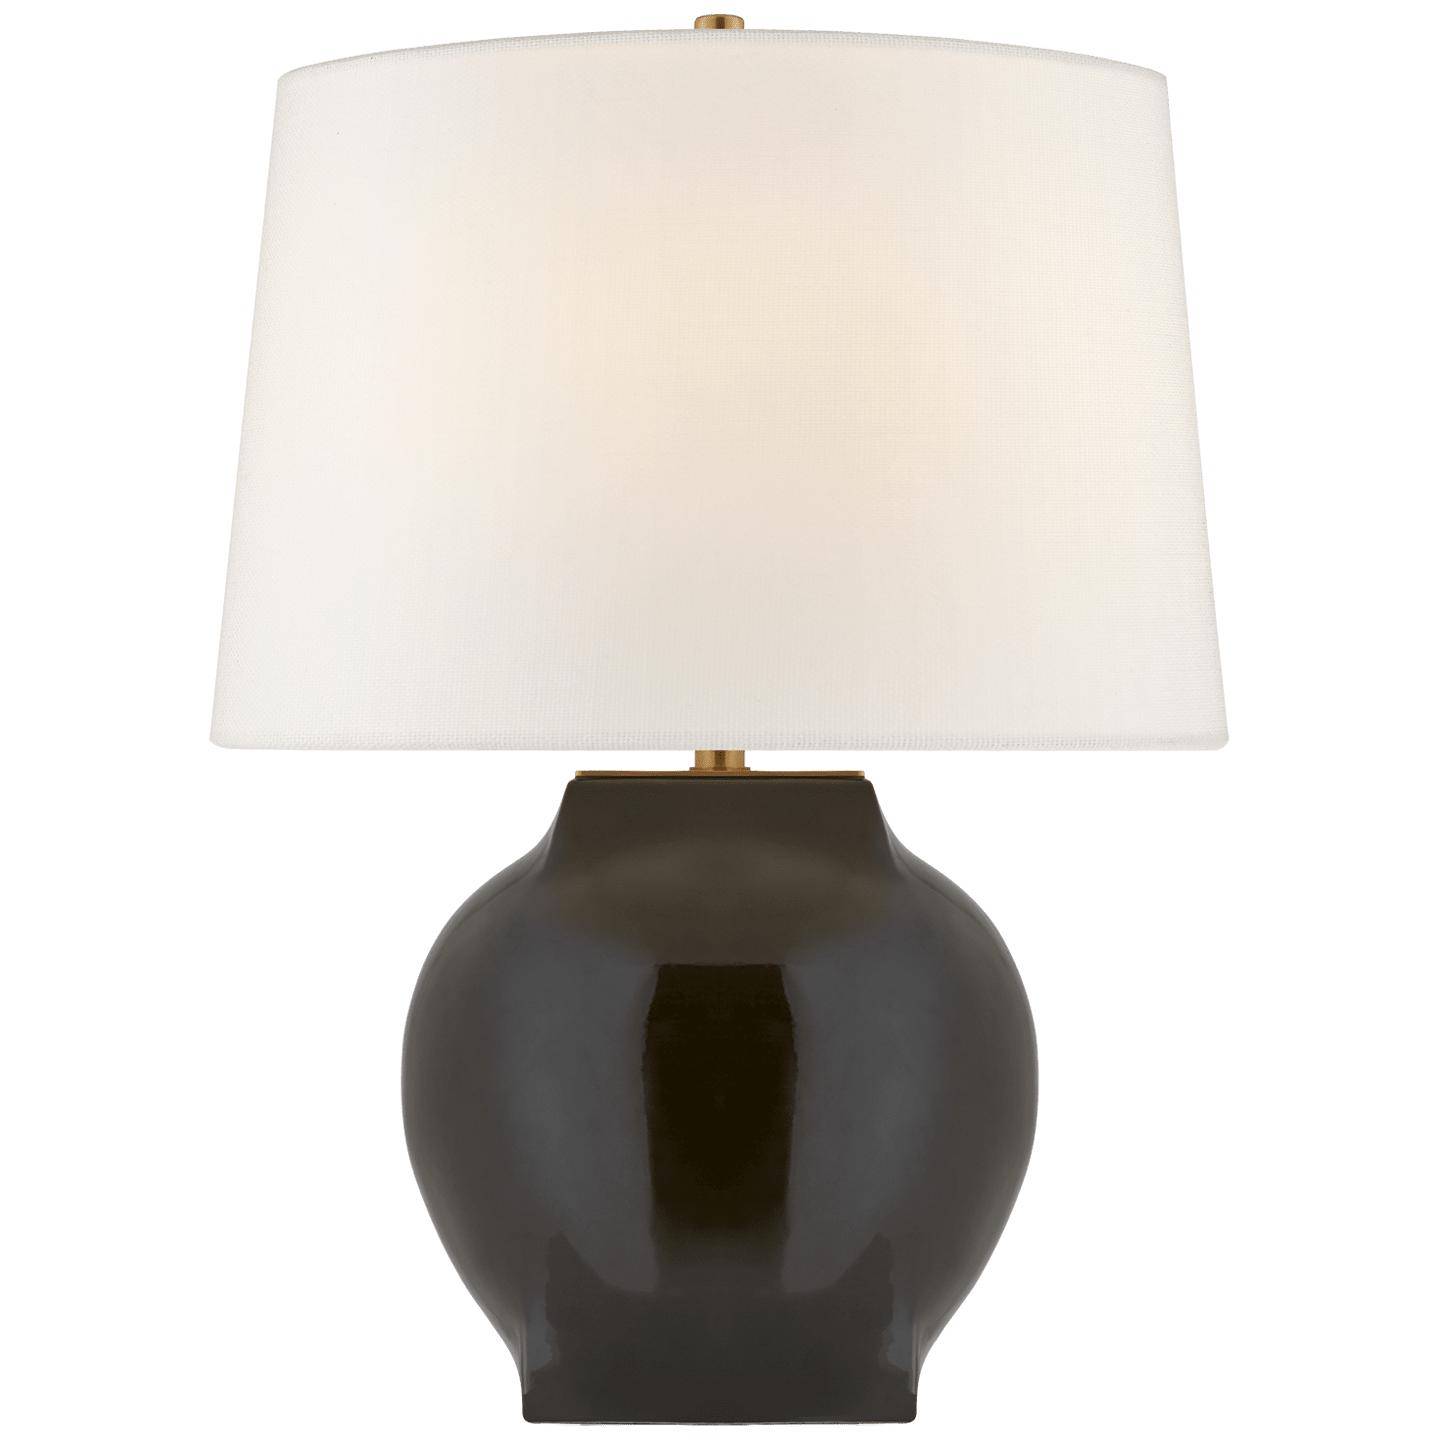 Купить Настольная лампа Ilona Medium Table Lamp в интернет-магазине roooms.ru